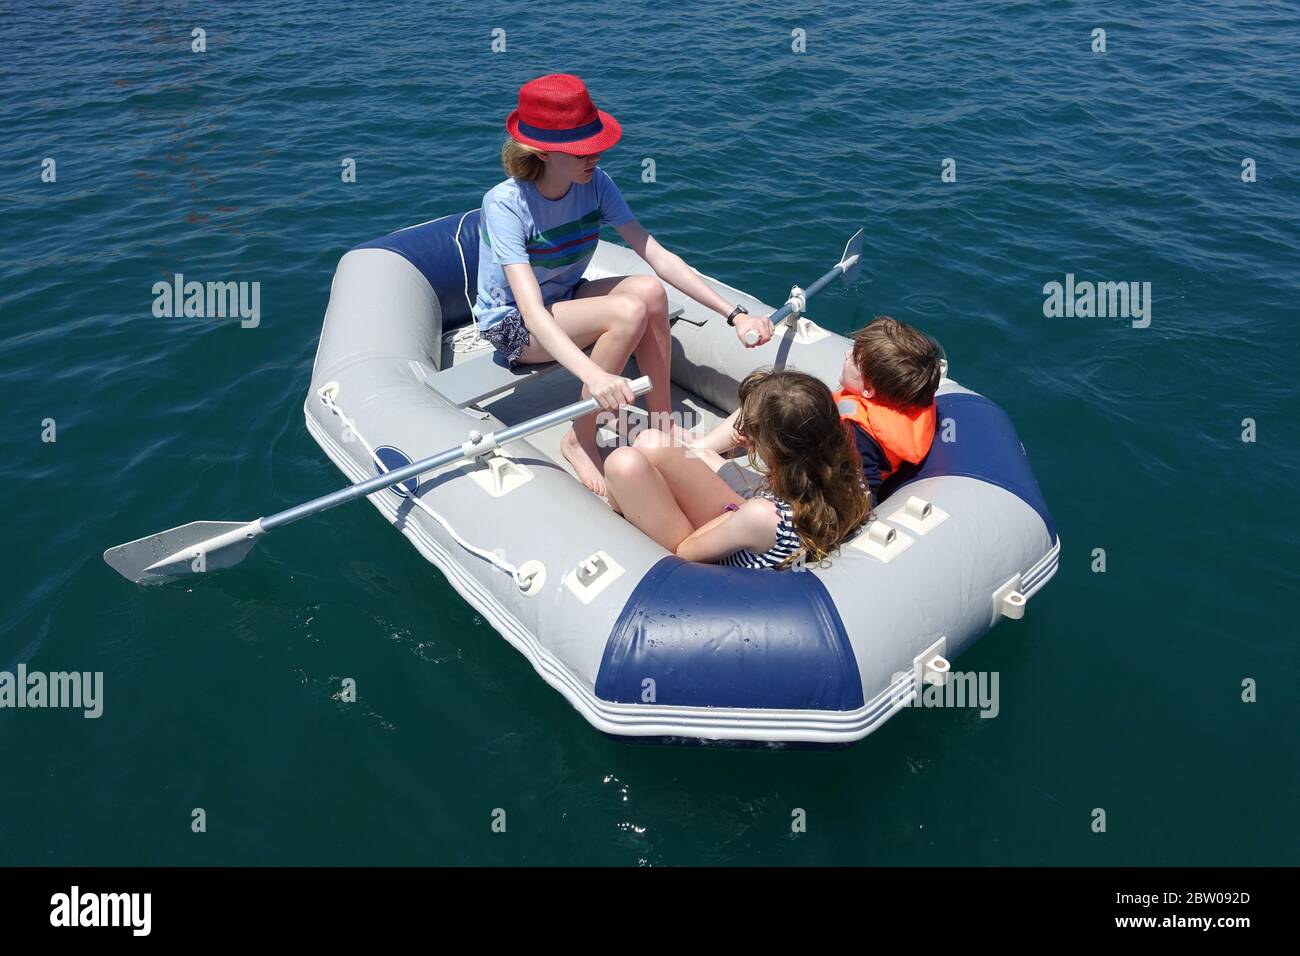 Kinder in einem Schlauchboot, Schlauchboote, Barumer See, Barum,  Niedersachsen, Deutschland Stockfotografie - Alamy